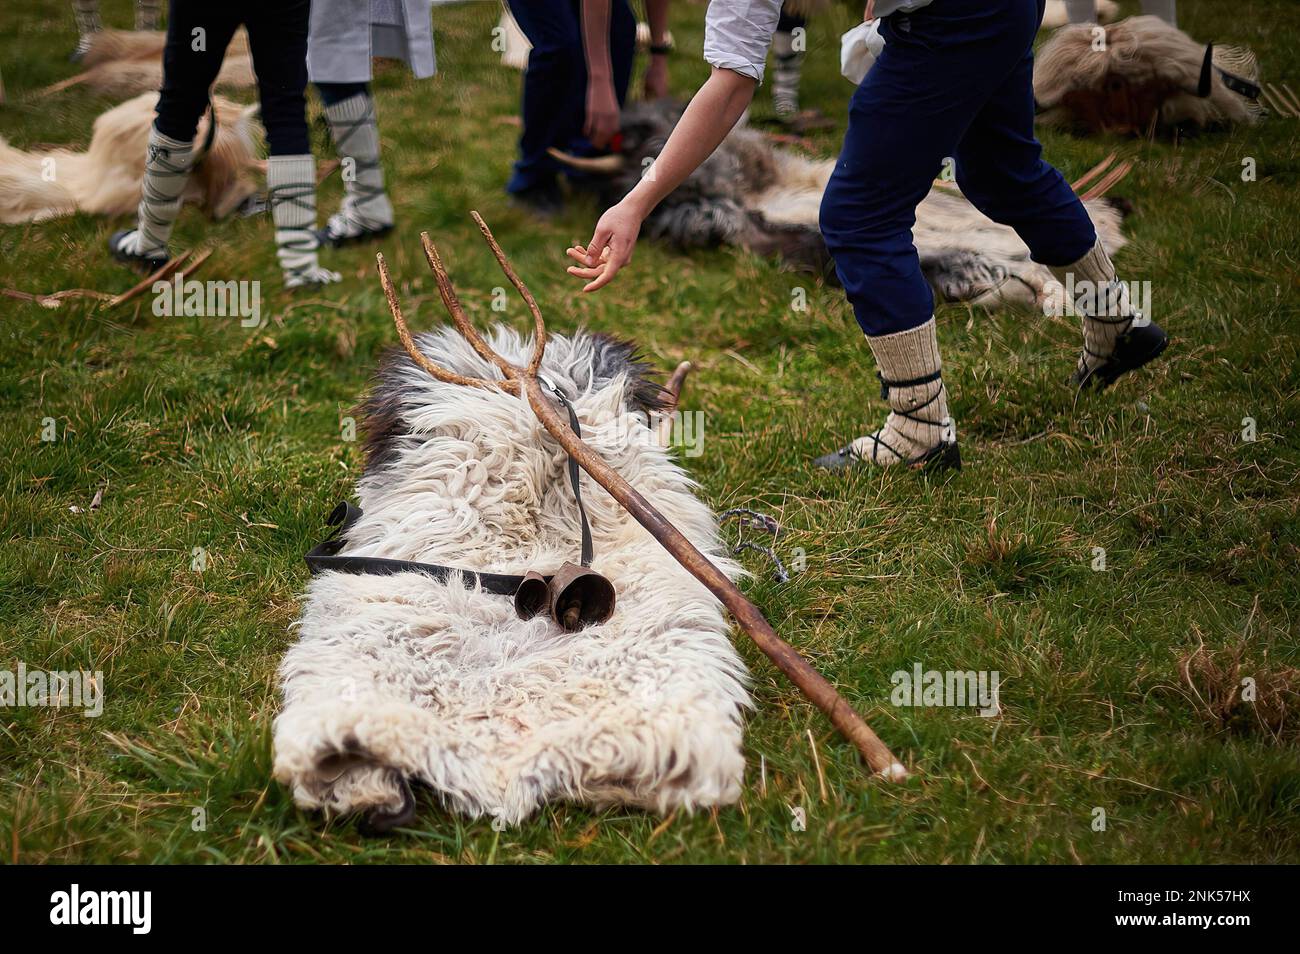 Las pieles de oveja Latxa, junto con el cencerro y la horca, llamada 'el  sarde', son las prendas con las que los 'omotxorros' llevan durante el  carnaval de Alsasua. El Carnaval involucra